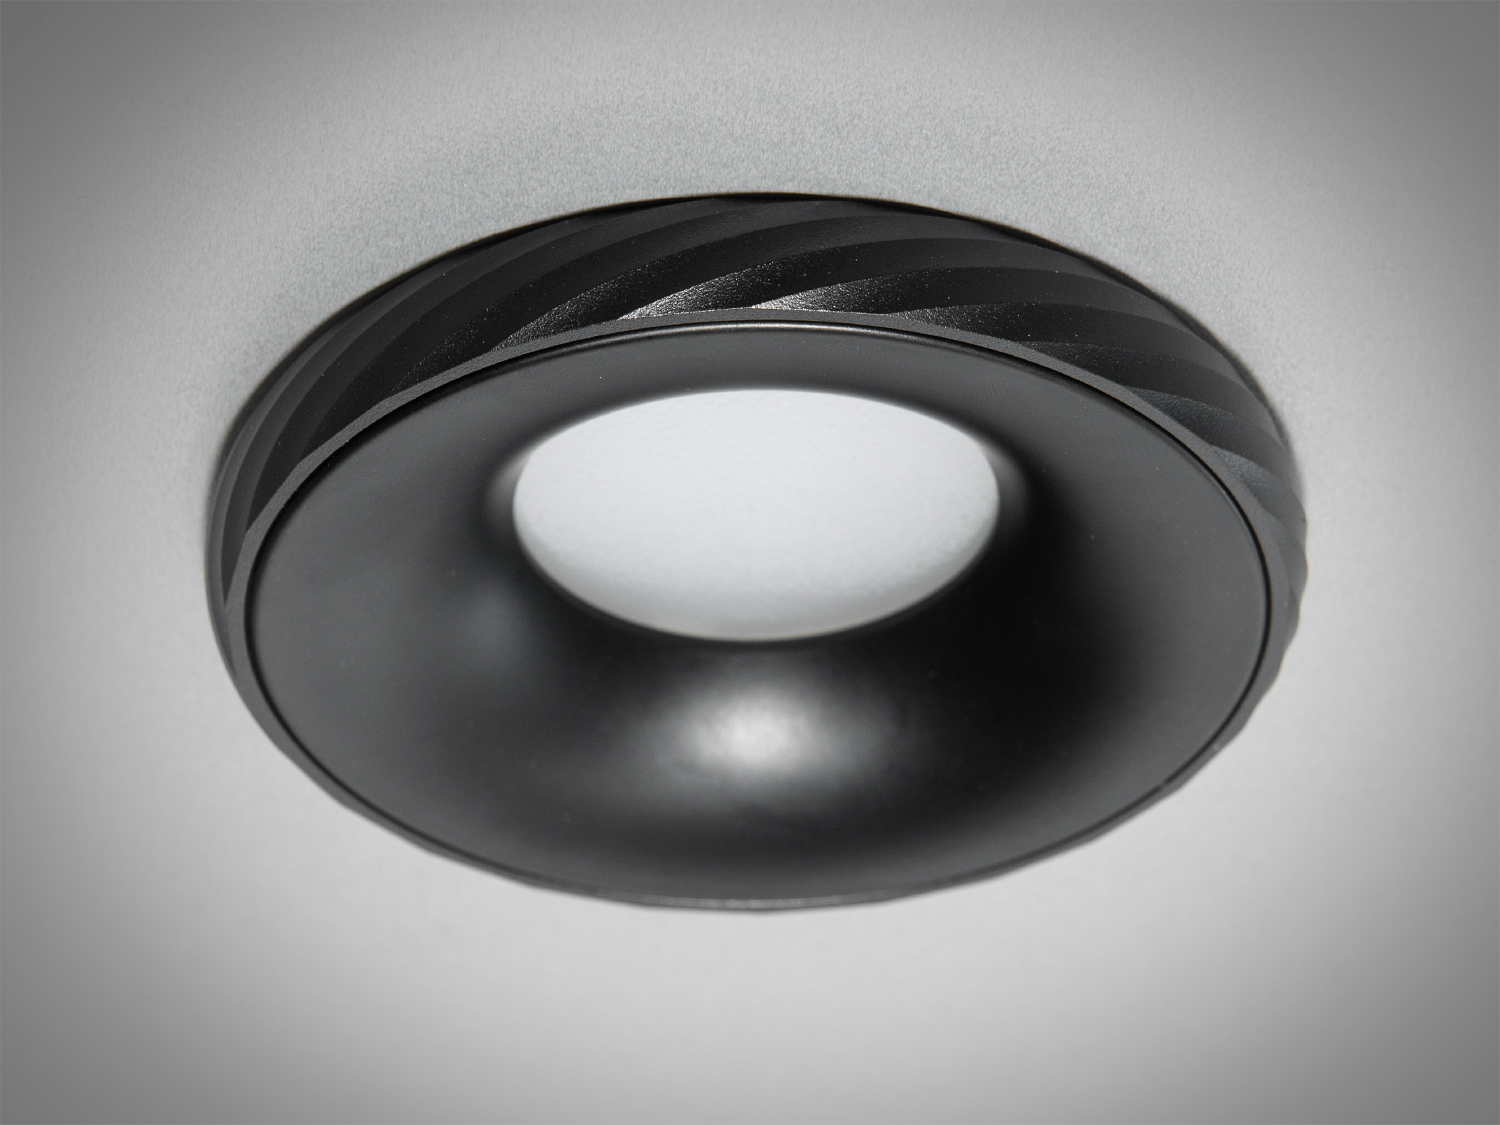 Оригінальний точковий світильник з алюмінію. Точкові світильники для ідеального освітлення у вашому домі або офісі, завдяки високій якості продукції та доступним цінам.